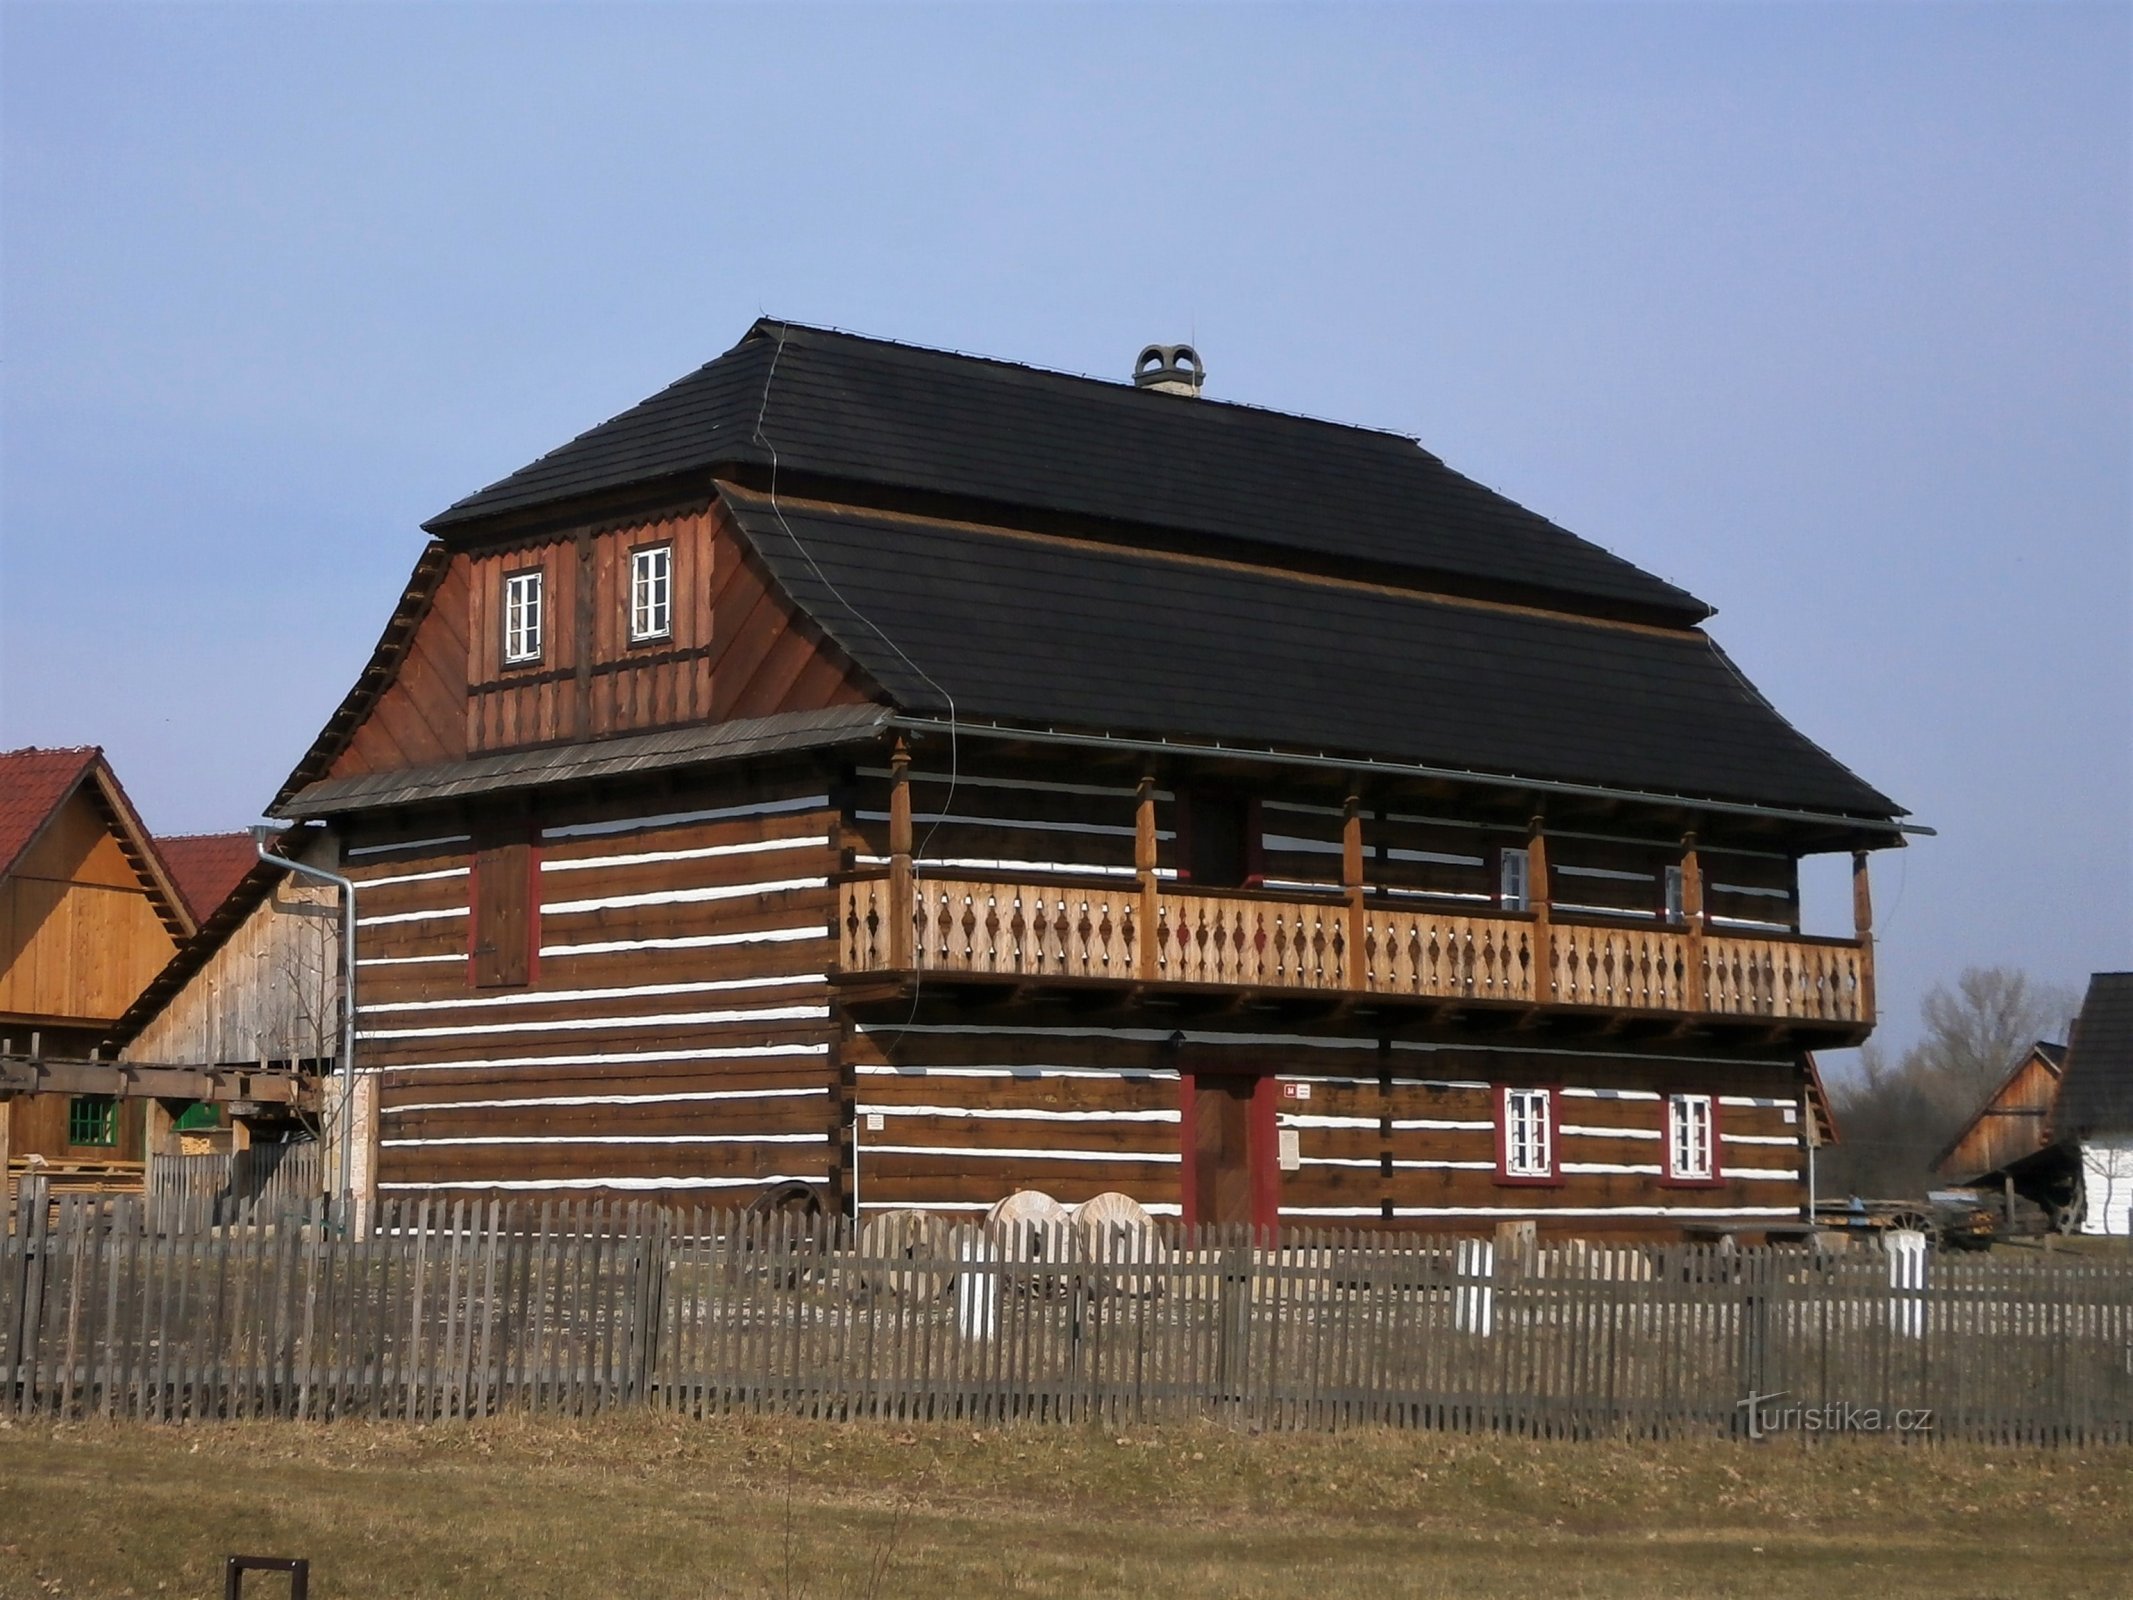 Replika av Béleč-bruket i Krňovicks friluftsmuseum (13.3.2017 maj XNUMX)